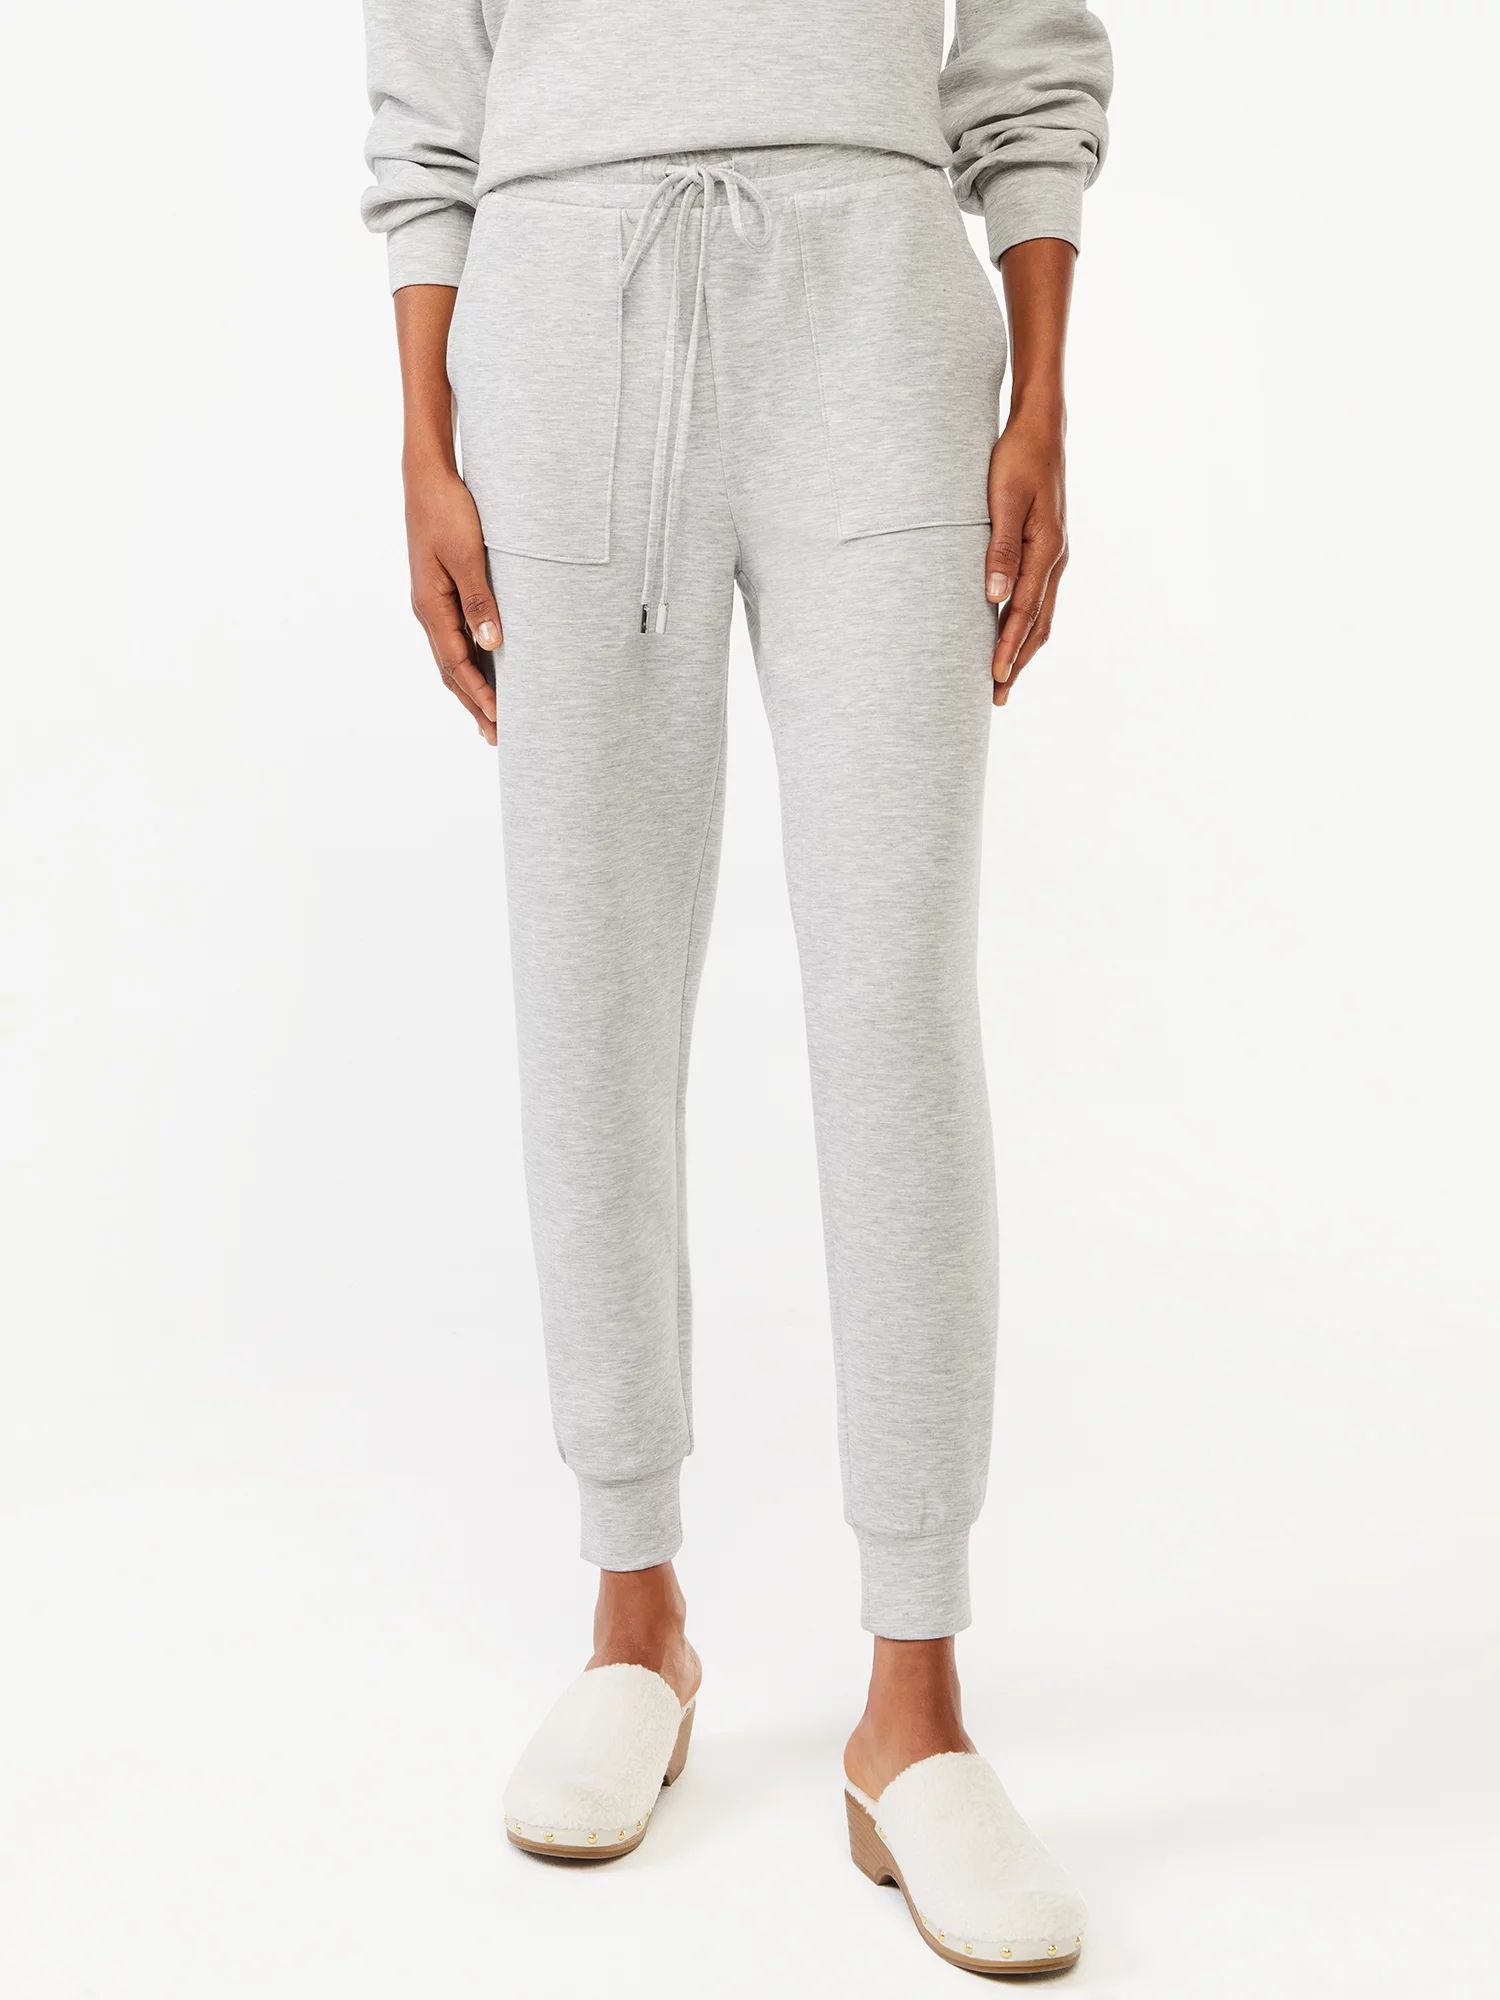 Scoop Women's Scuba Knit Pants with Pockets | Walmart (US)